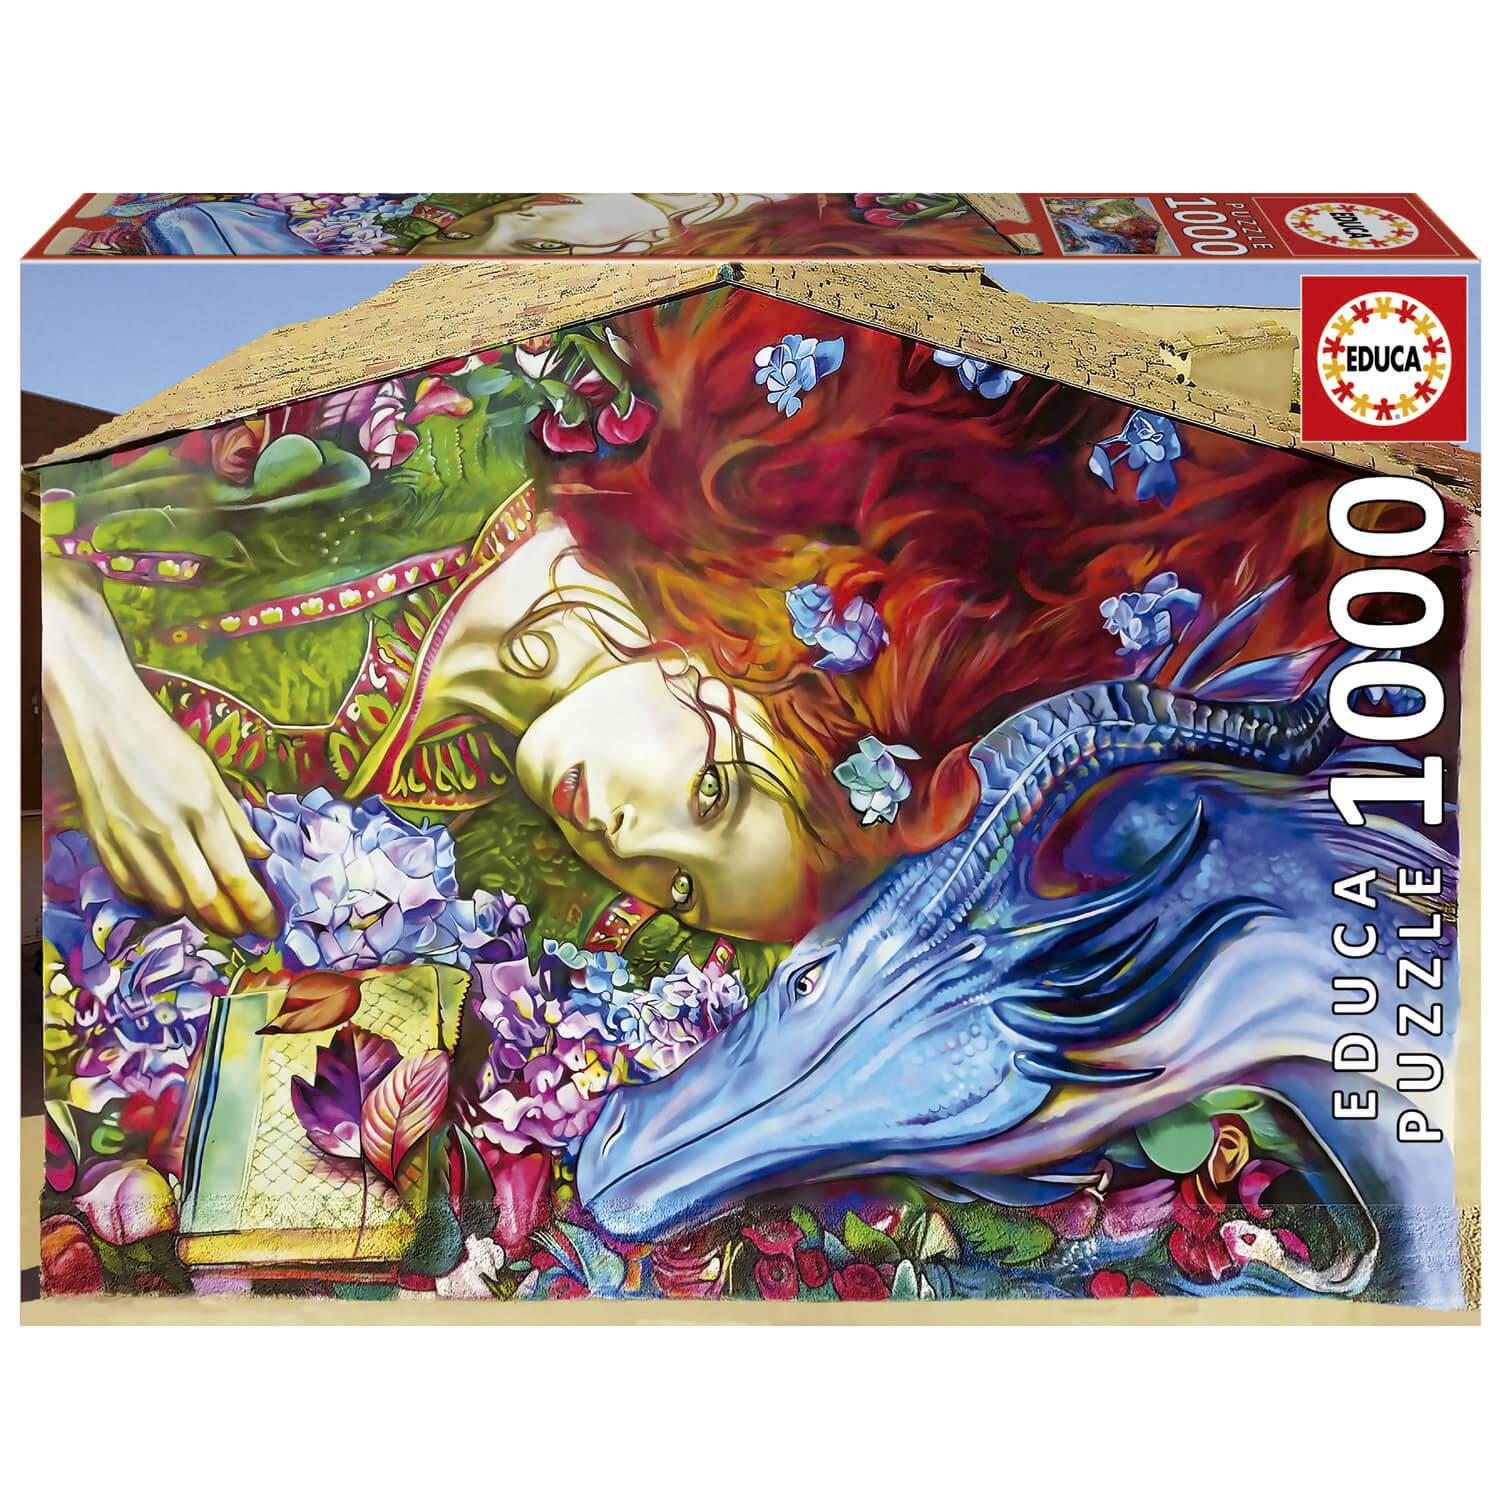 Tapis / Puzzle de 1 000 pièces -  France